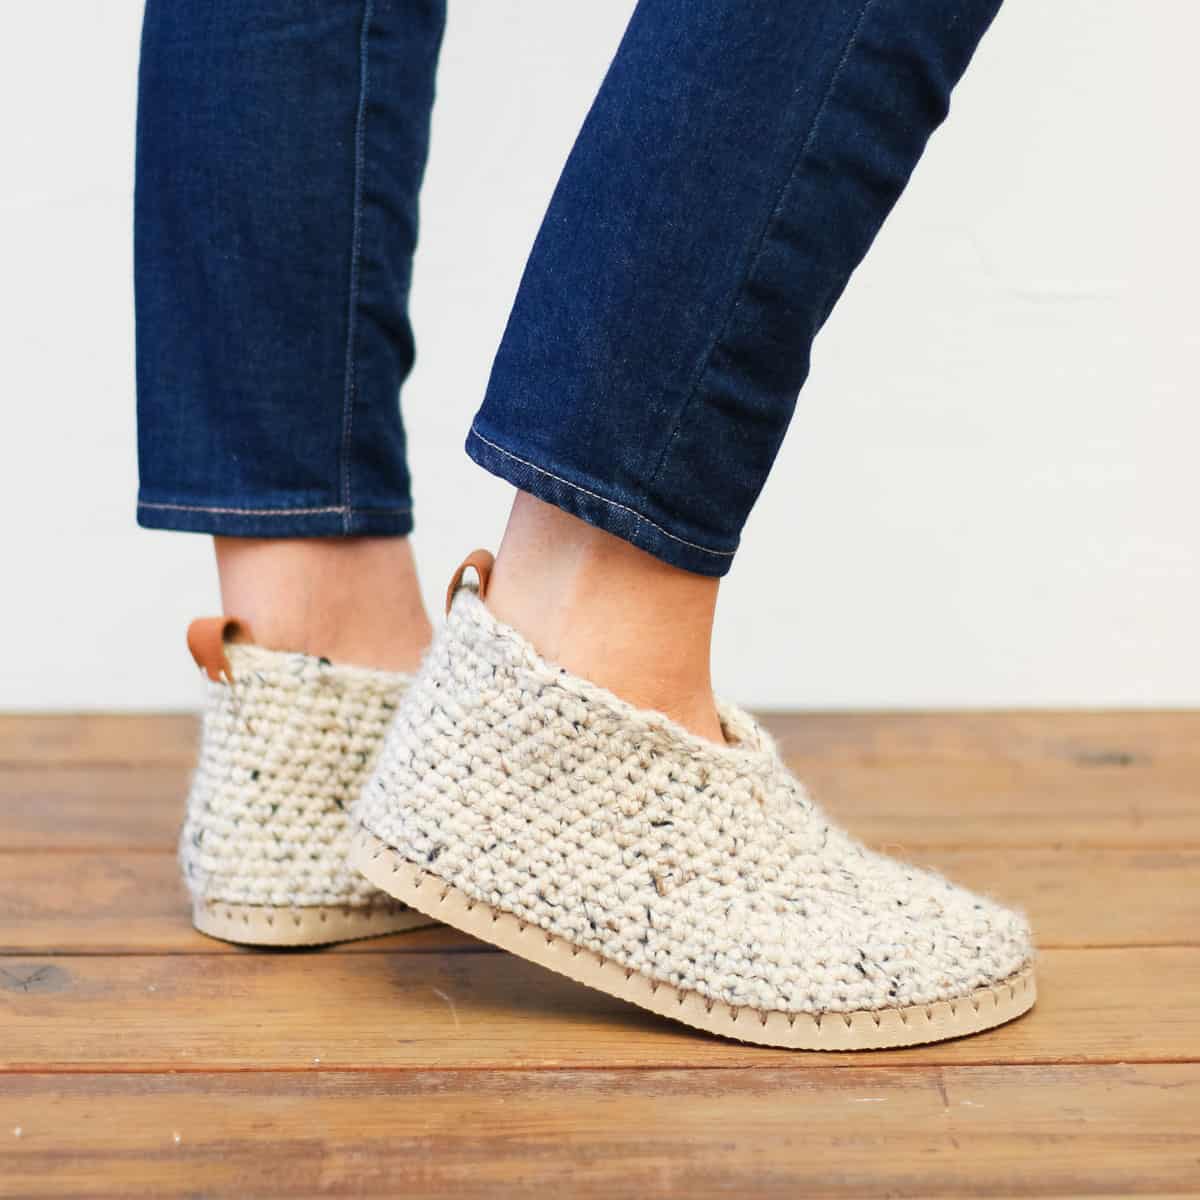 Crochet Slipper Boots w/ Flip Flop Soles - Free Pattern » Make & Crew